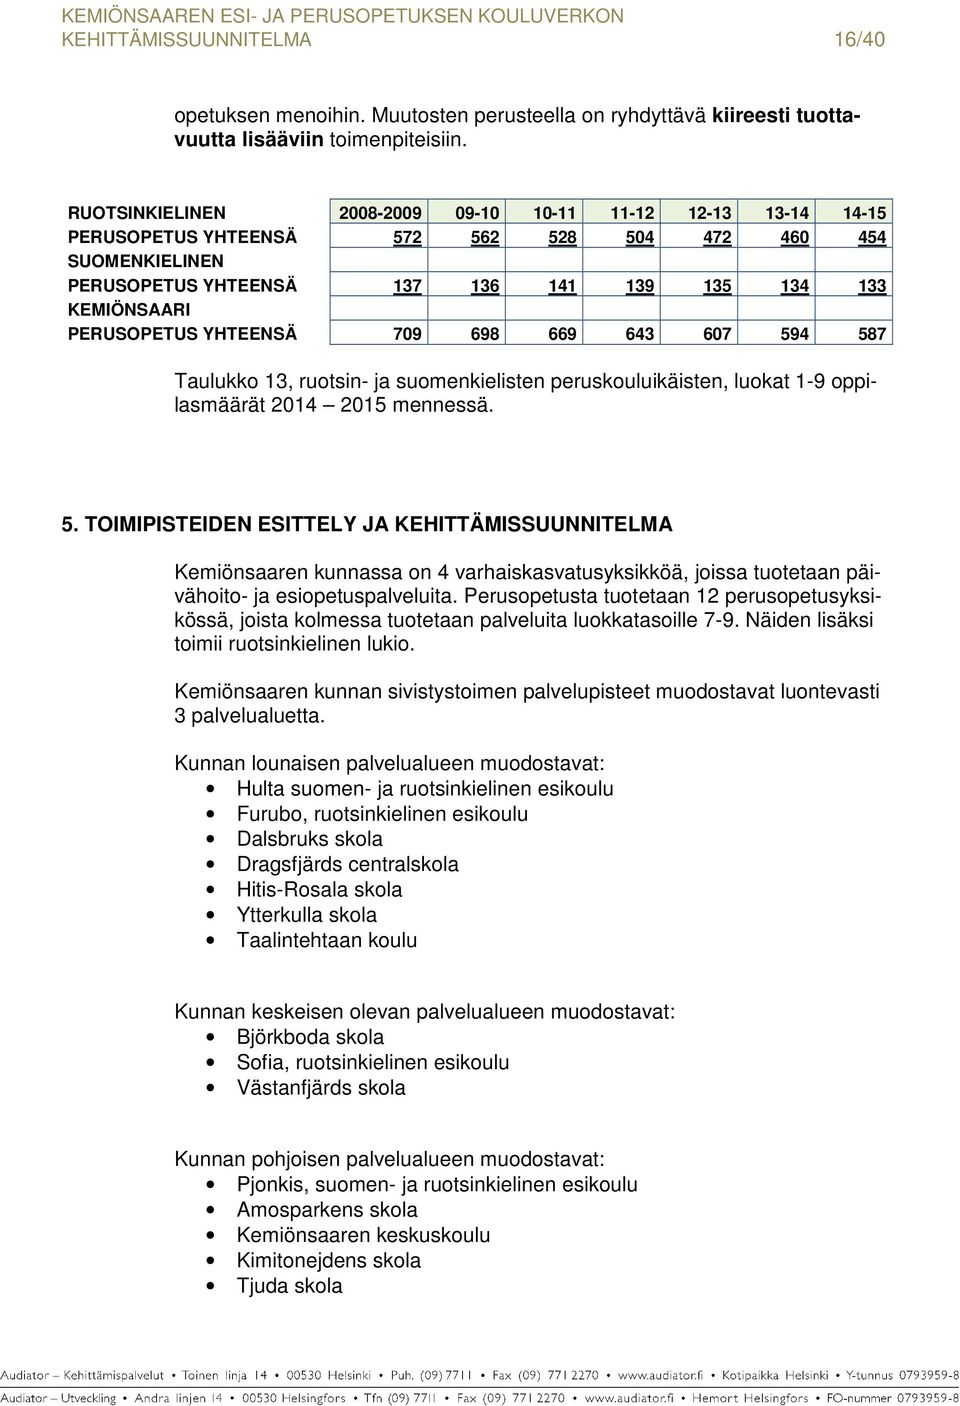 YHTEENSÄ 709 698 669 643 607 594 587 Taulukko 13, ruotsin- ja suomenkielisten peruskouluikäisten, luokat 1-9 oppilasmäärät 2014 2015 mennessä. 5. TOIMIPISTEIDEN ESITTELY JA KEHITTÄMISSUUNNITELMA Kemiönsaaren kunnassa on 4 varhaiskasvatusyksikköä, joissa tuotetaan päivähoito- ja esiopetuspalveluita.